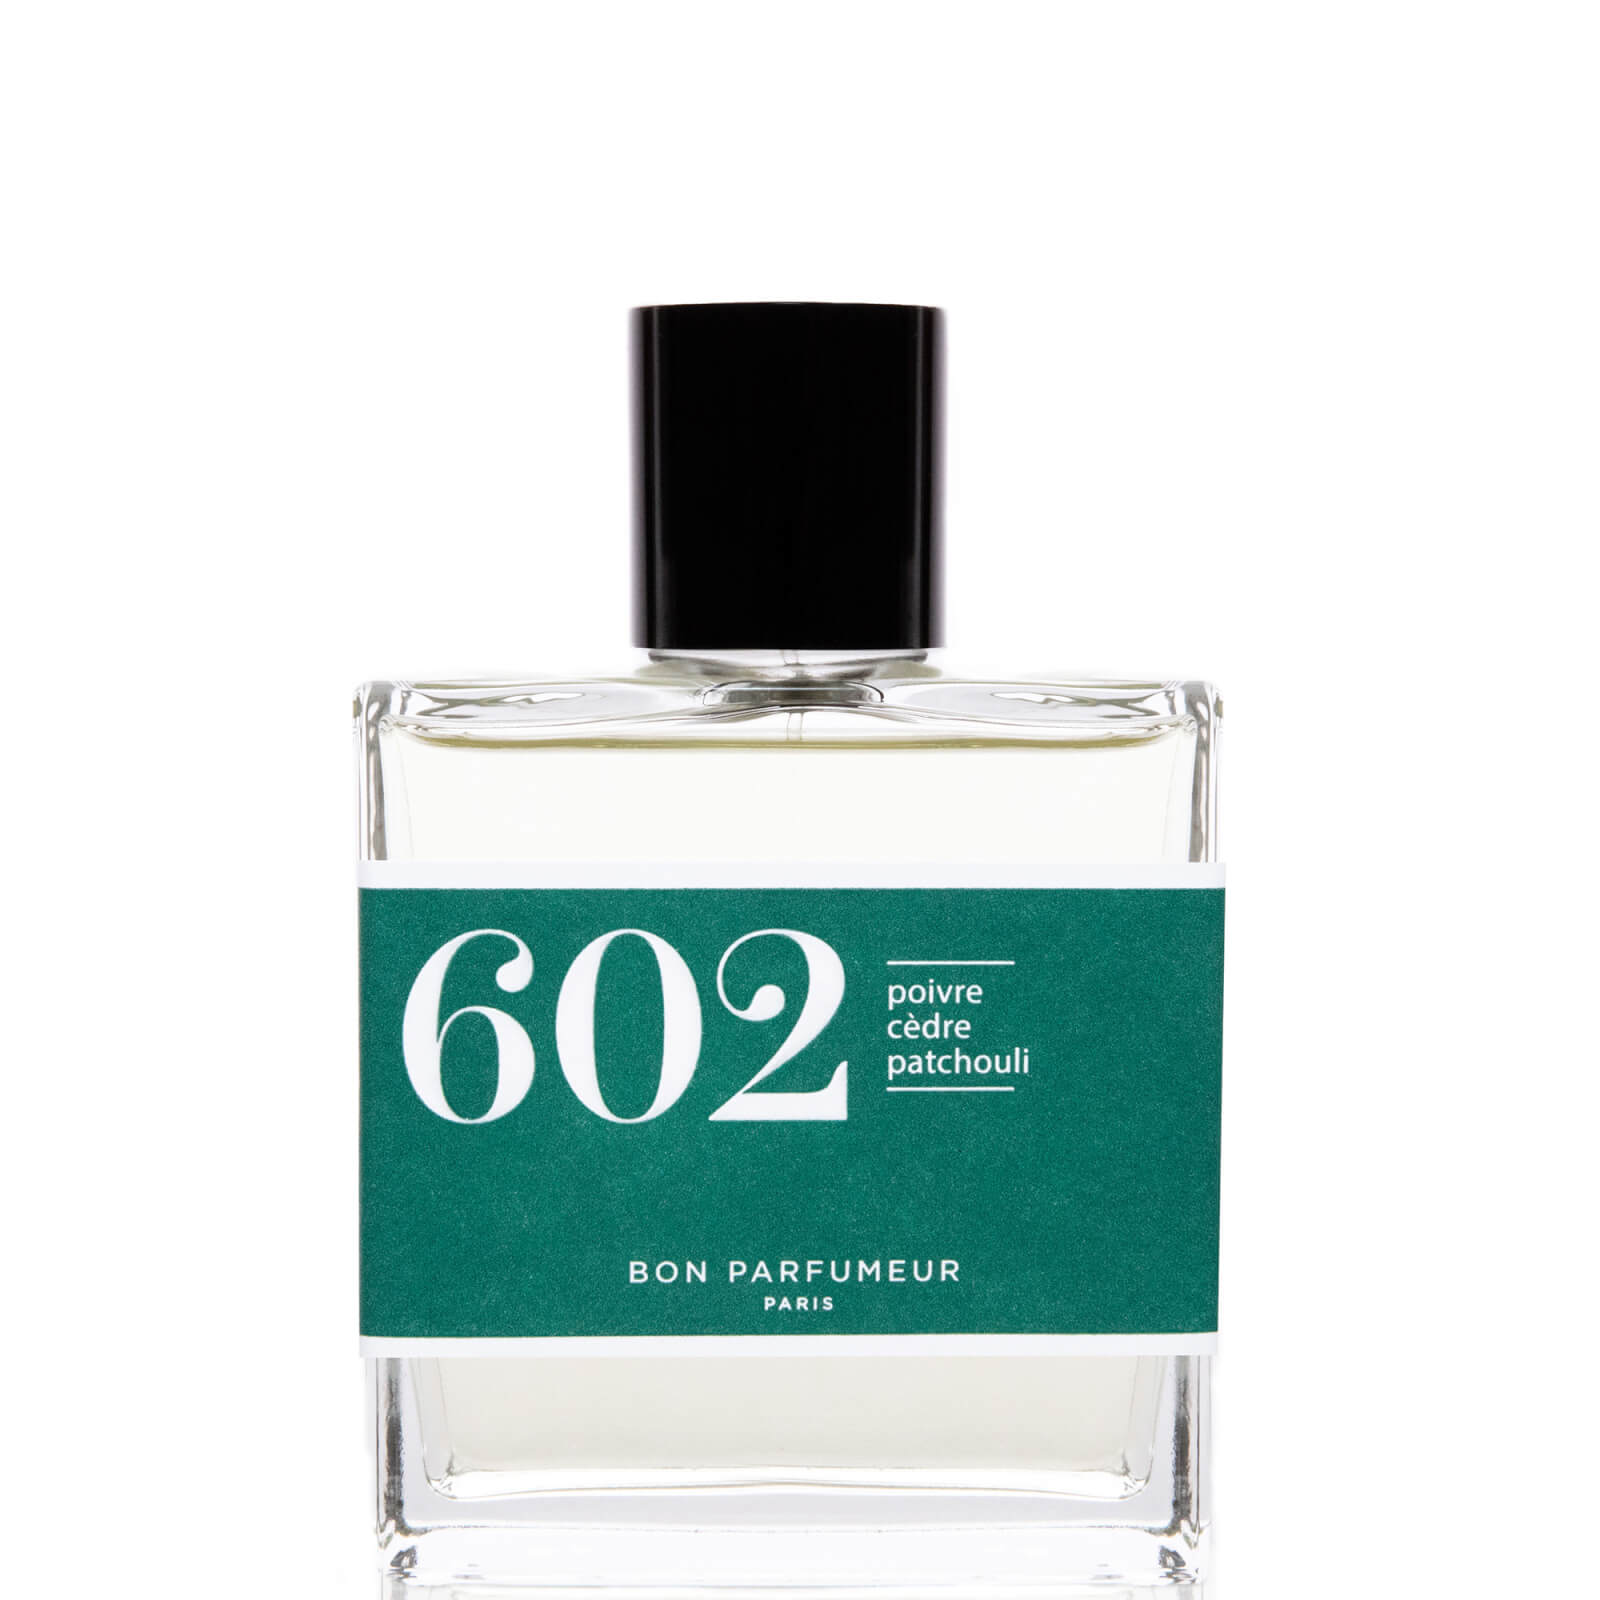 Image of Bon Parfumeur 602 Pepe Cedro Patchouli Eau de Parfum - 100ml